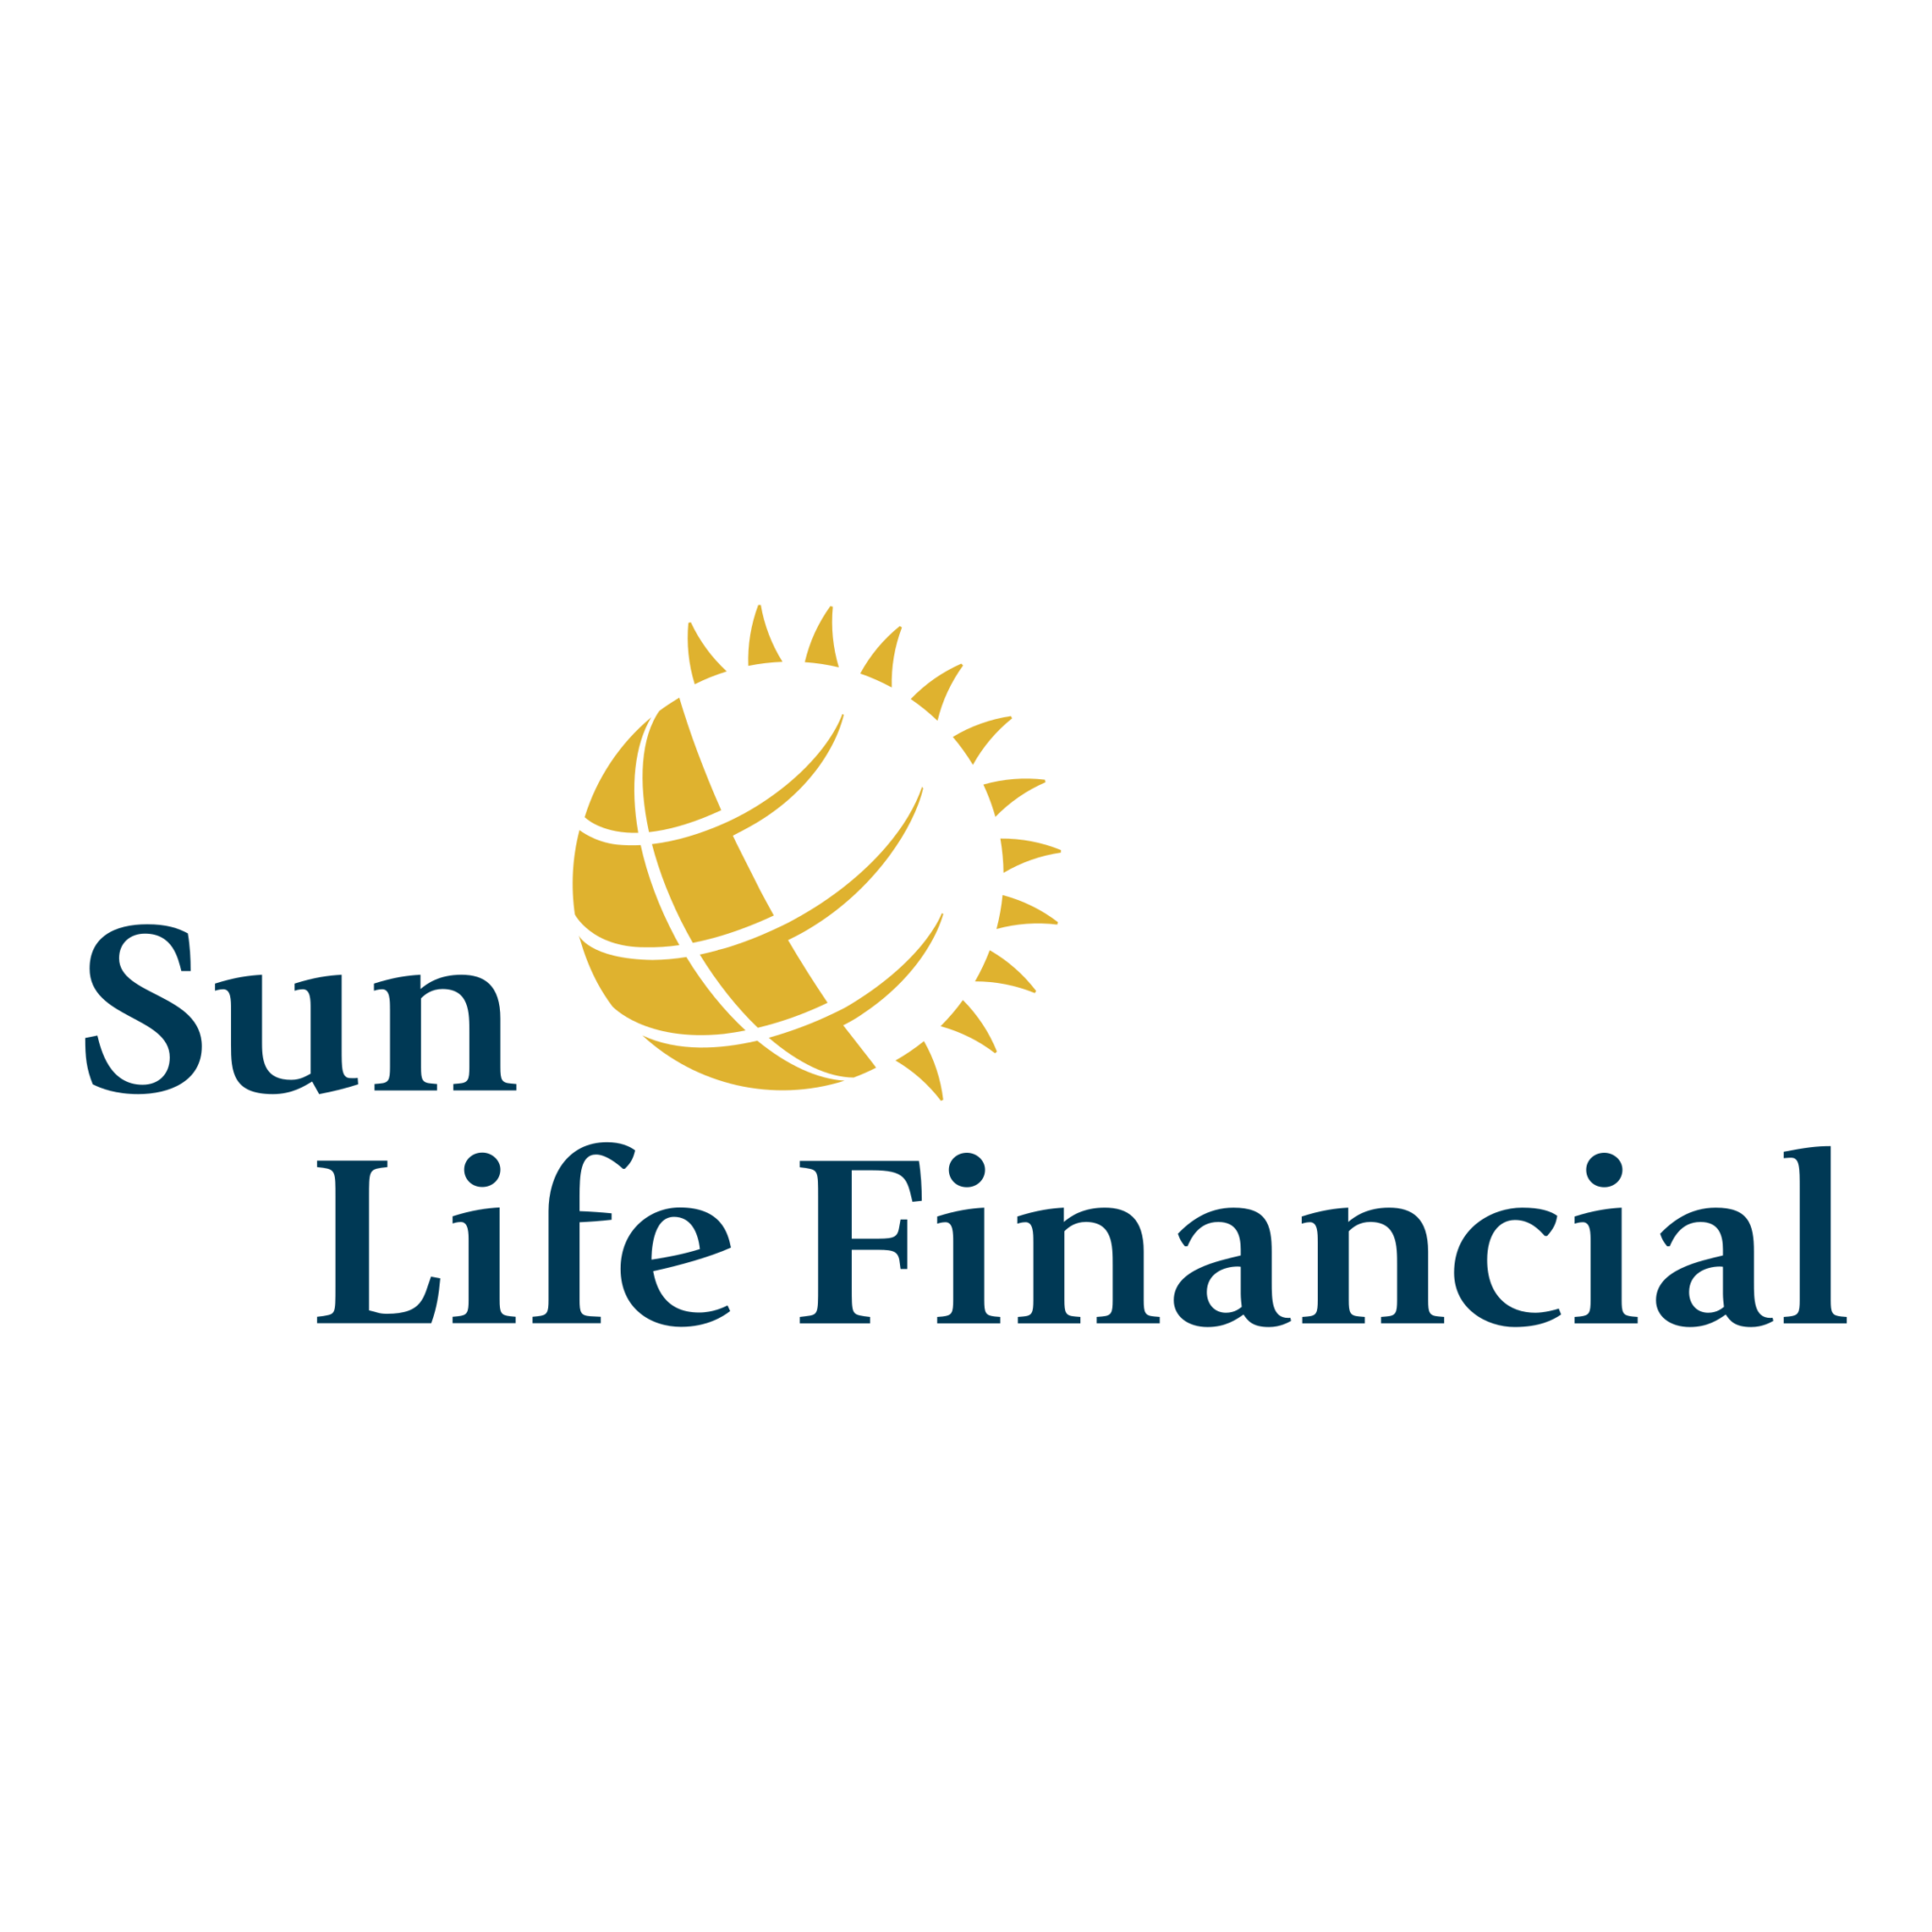 Sun Life Financial Chamber Member Castlegar Chamber Of Commerce